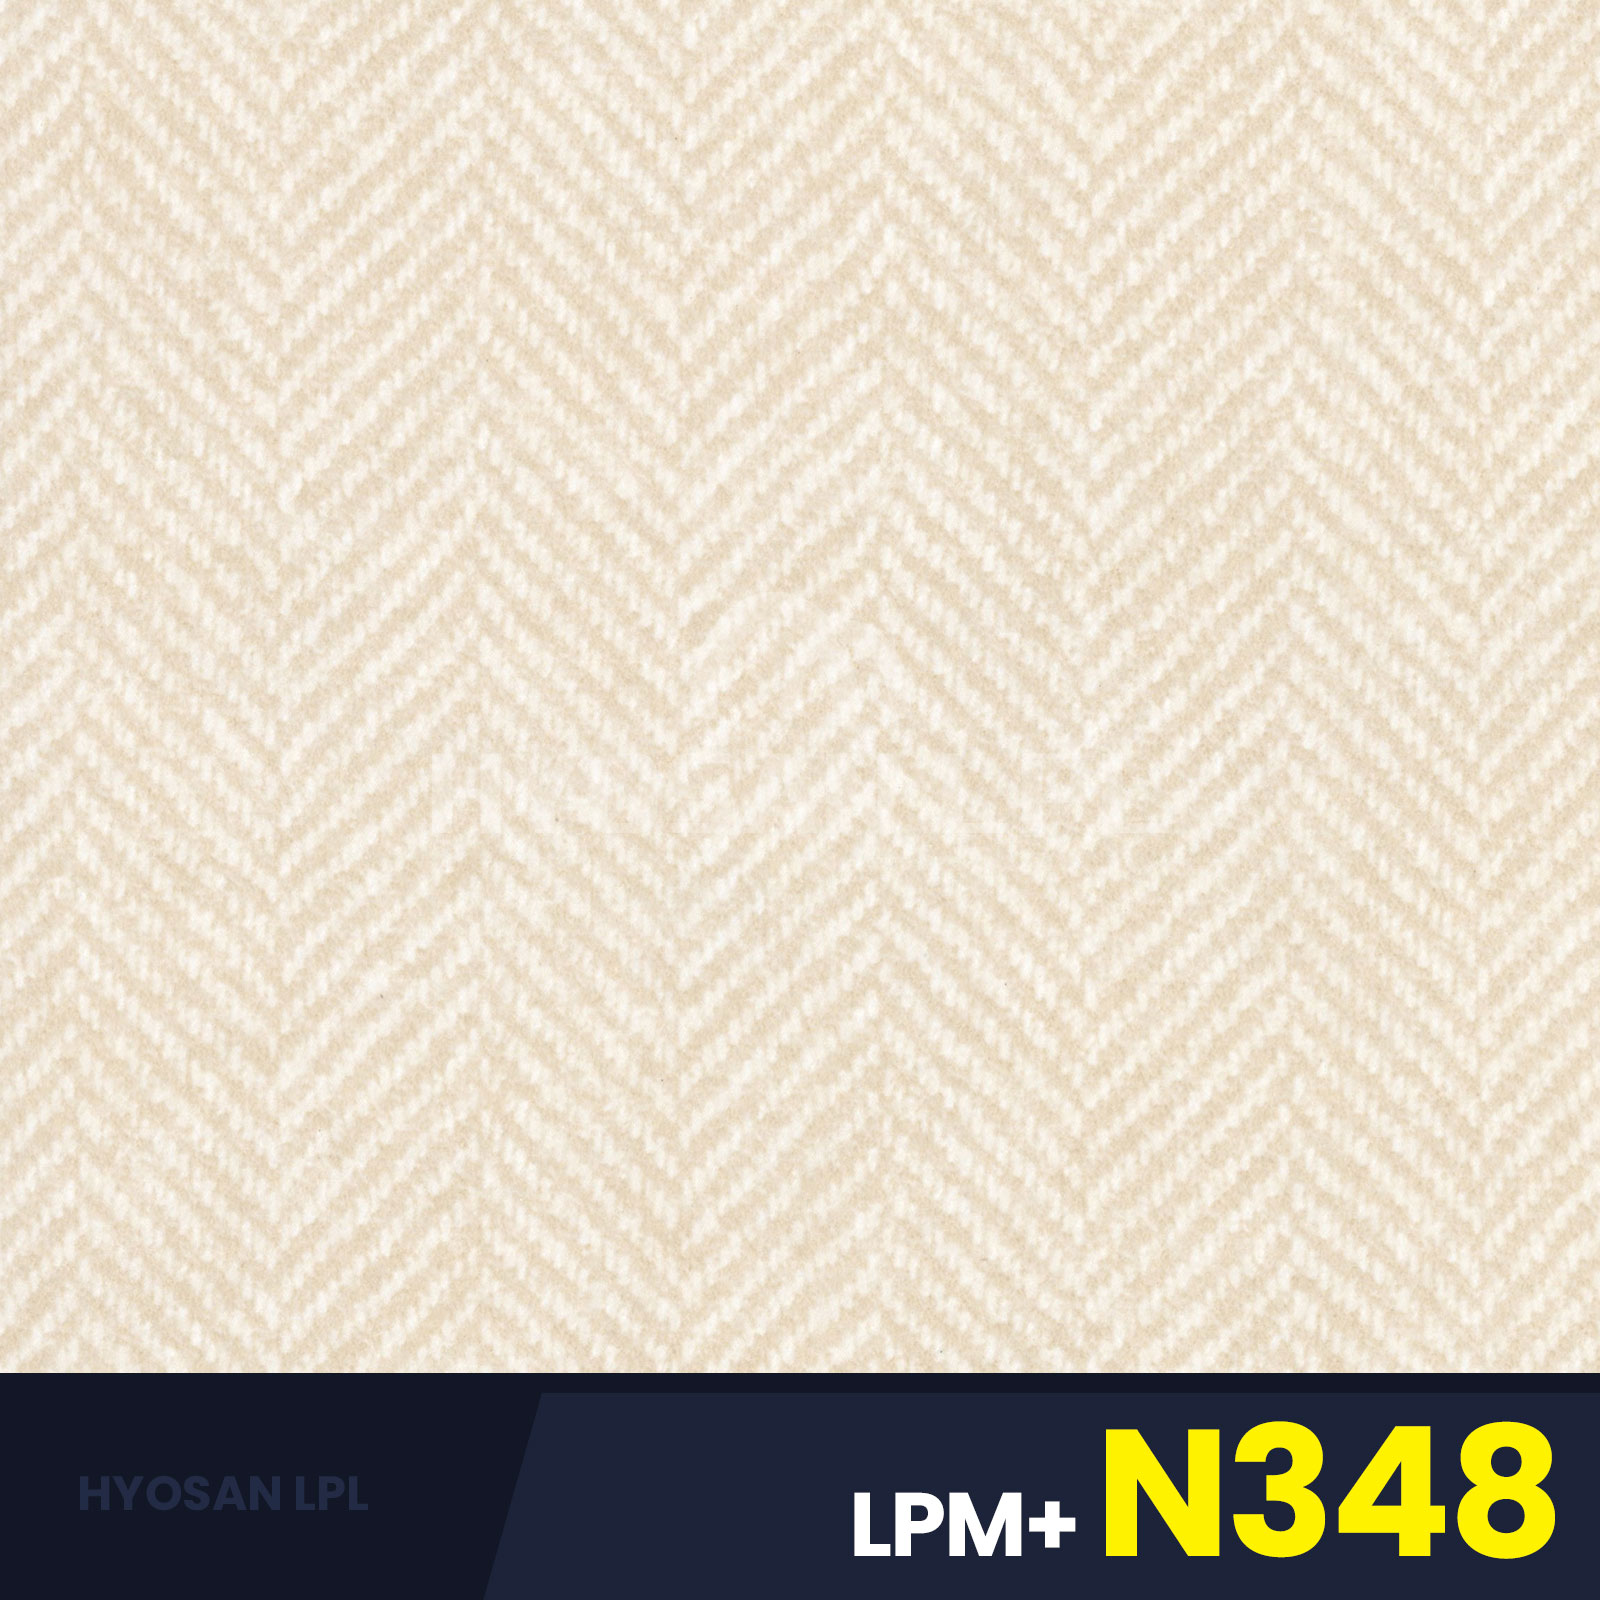 LPM+N348